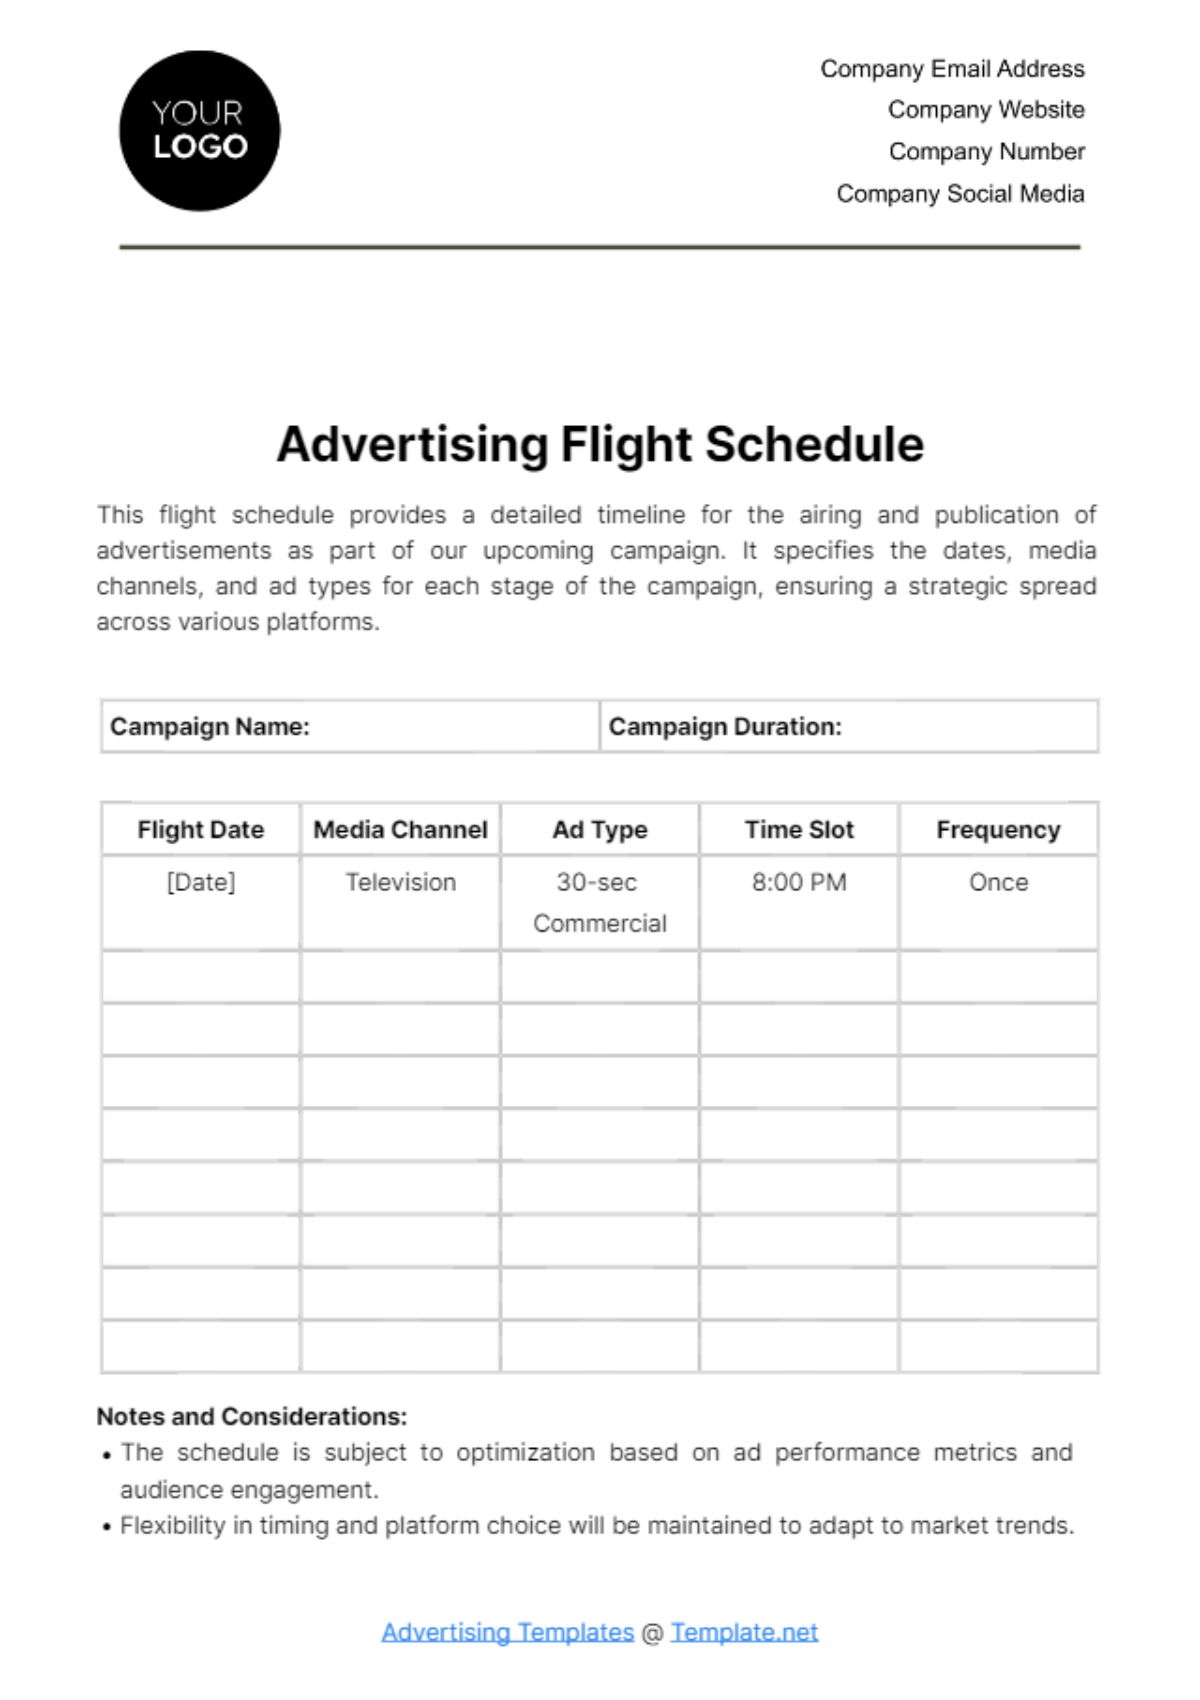 Advertising Flight Schedule Template